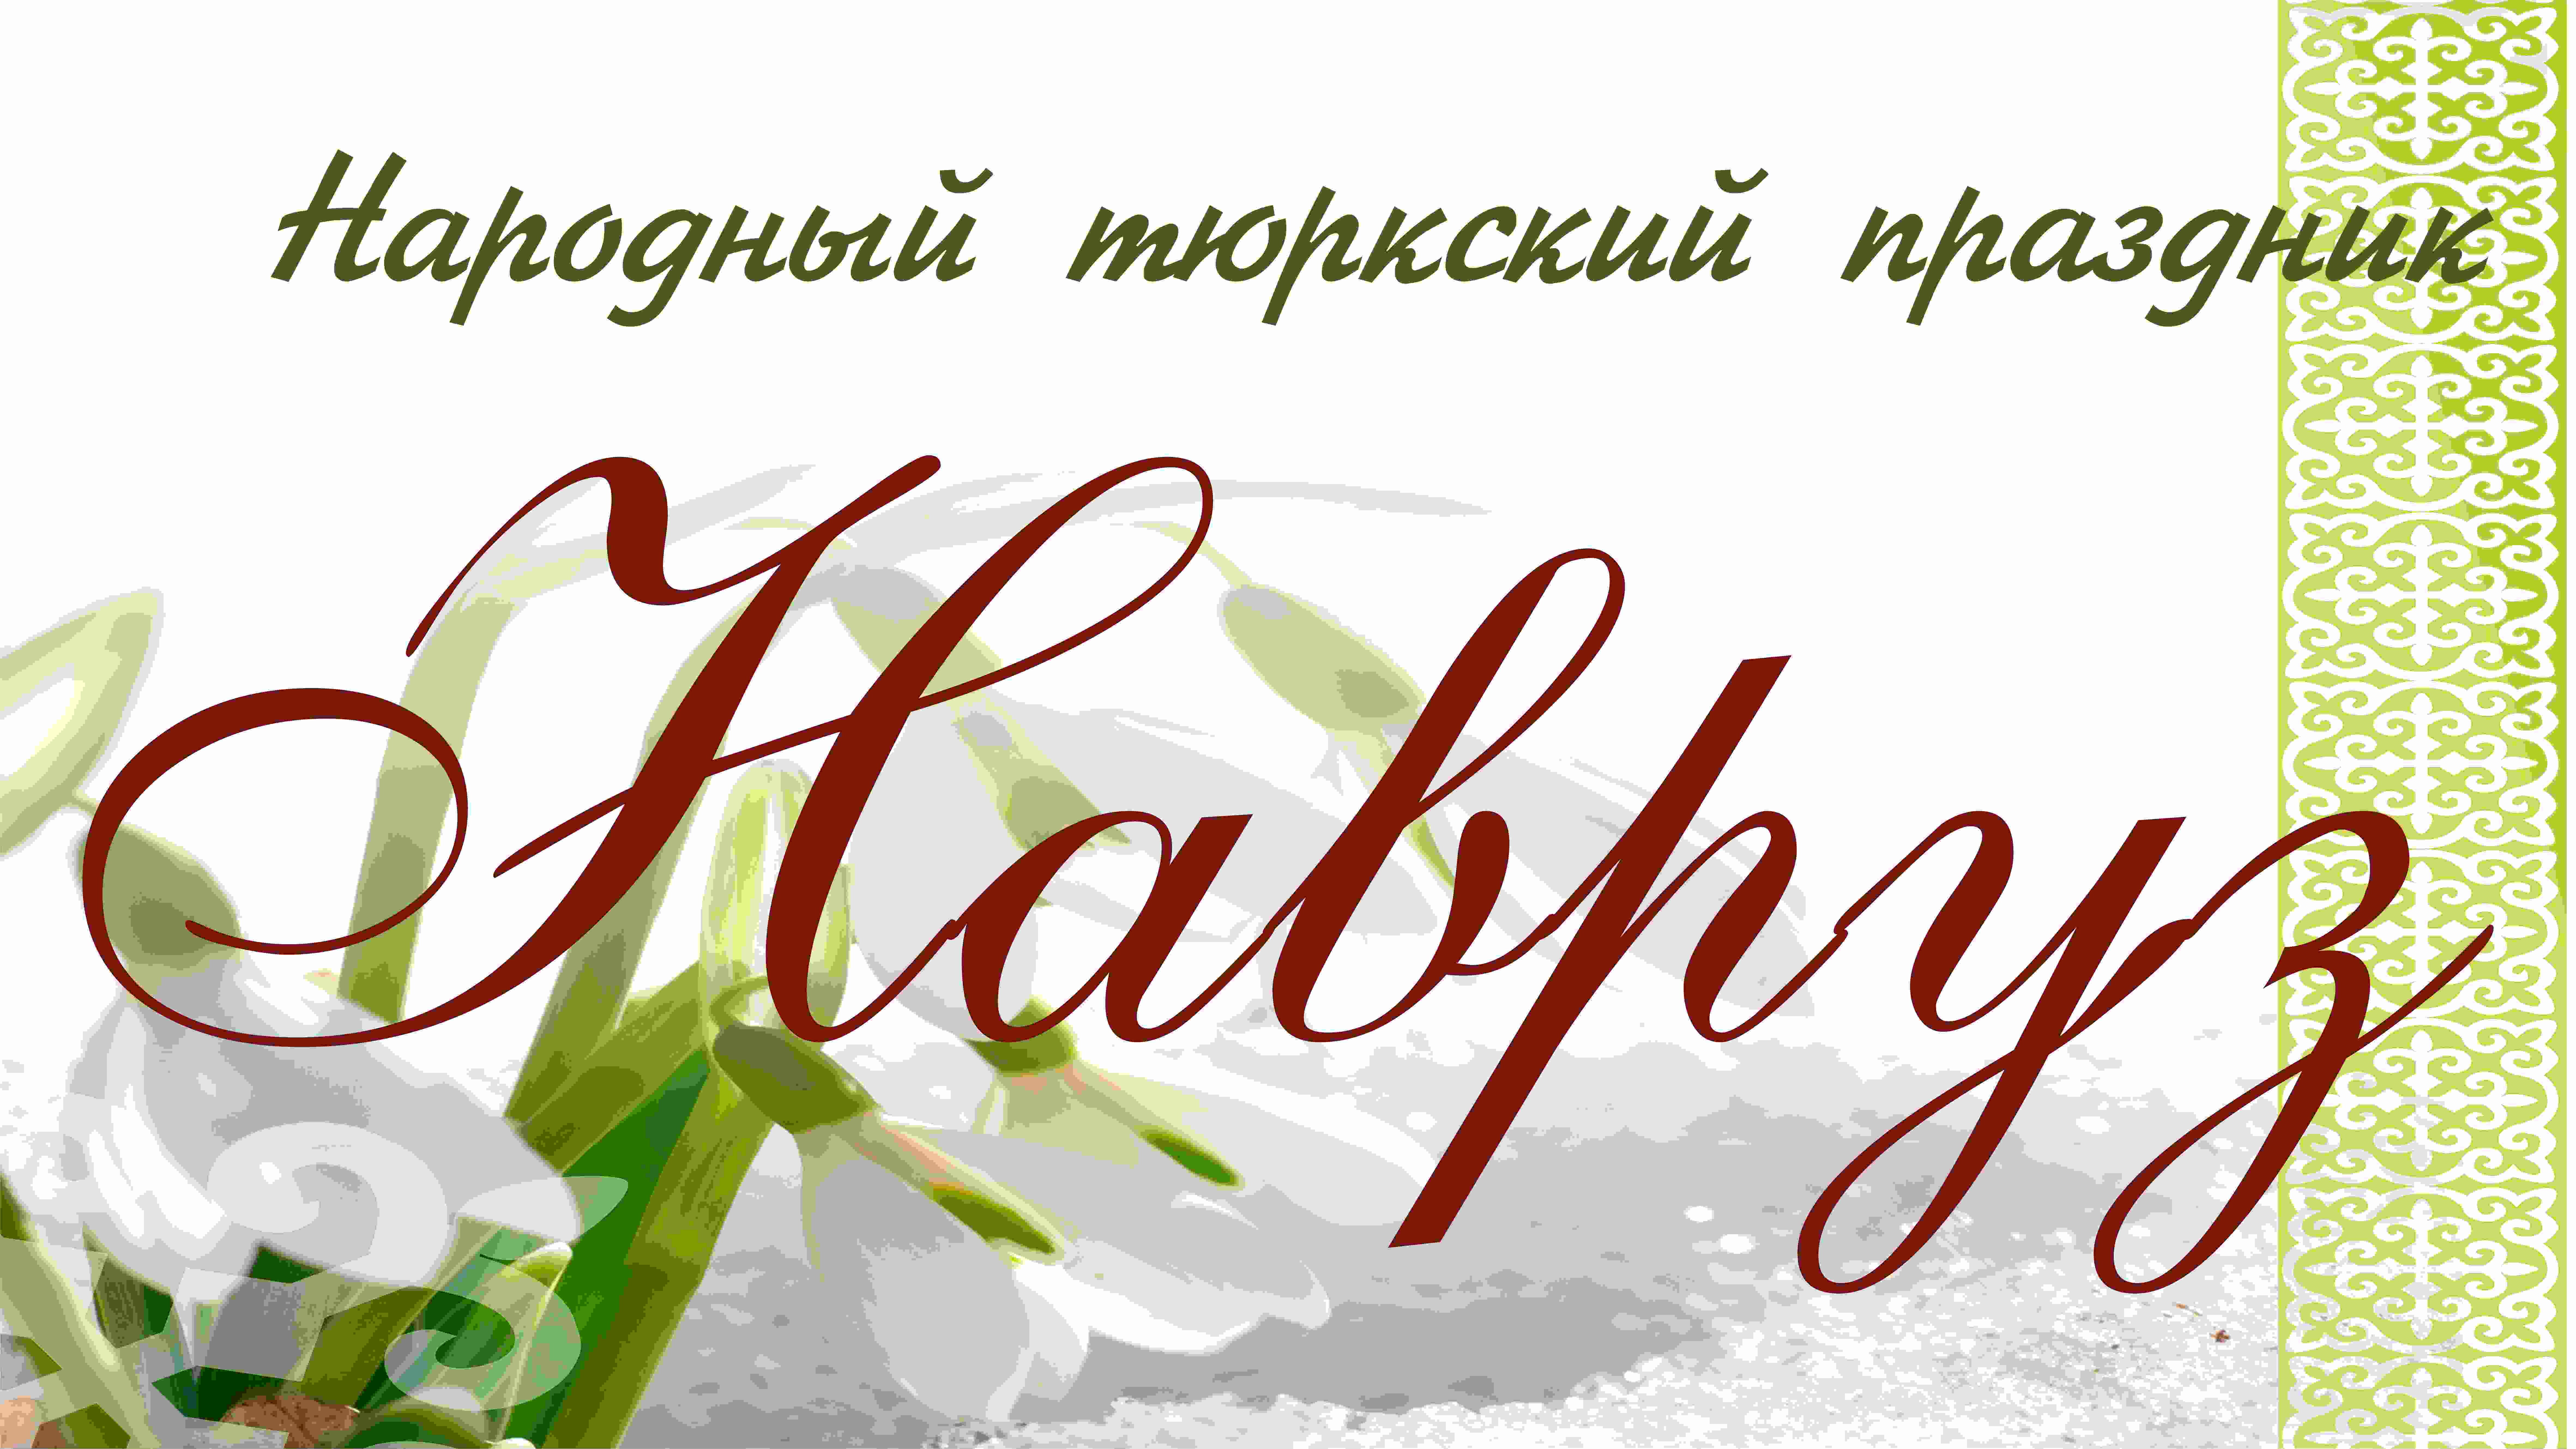 Народный праздник НАВРУЗ
(23 марта 2014 года, аул Домбай, Марьяновский муниципальный район)